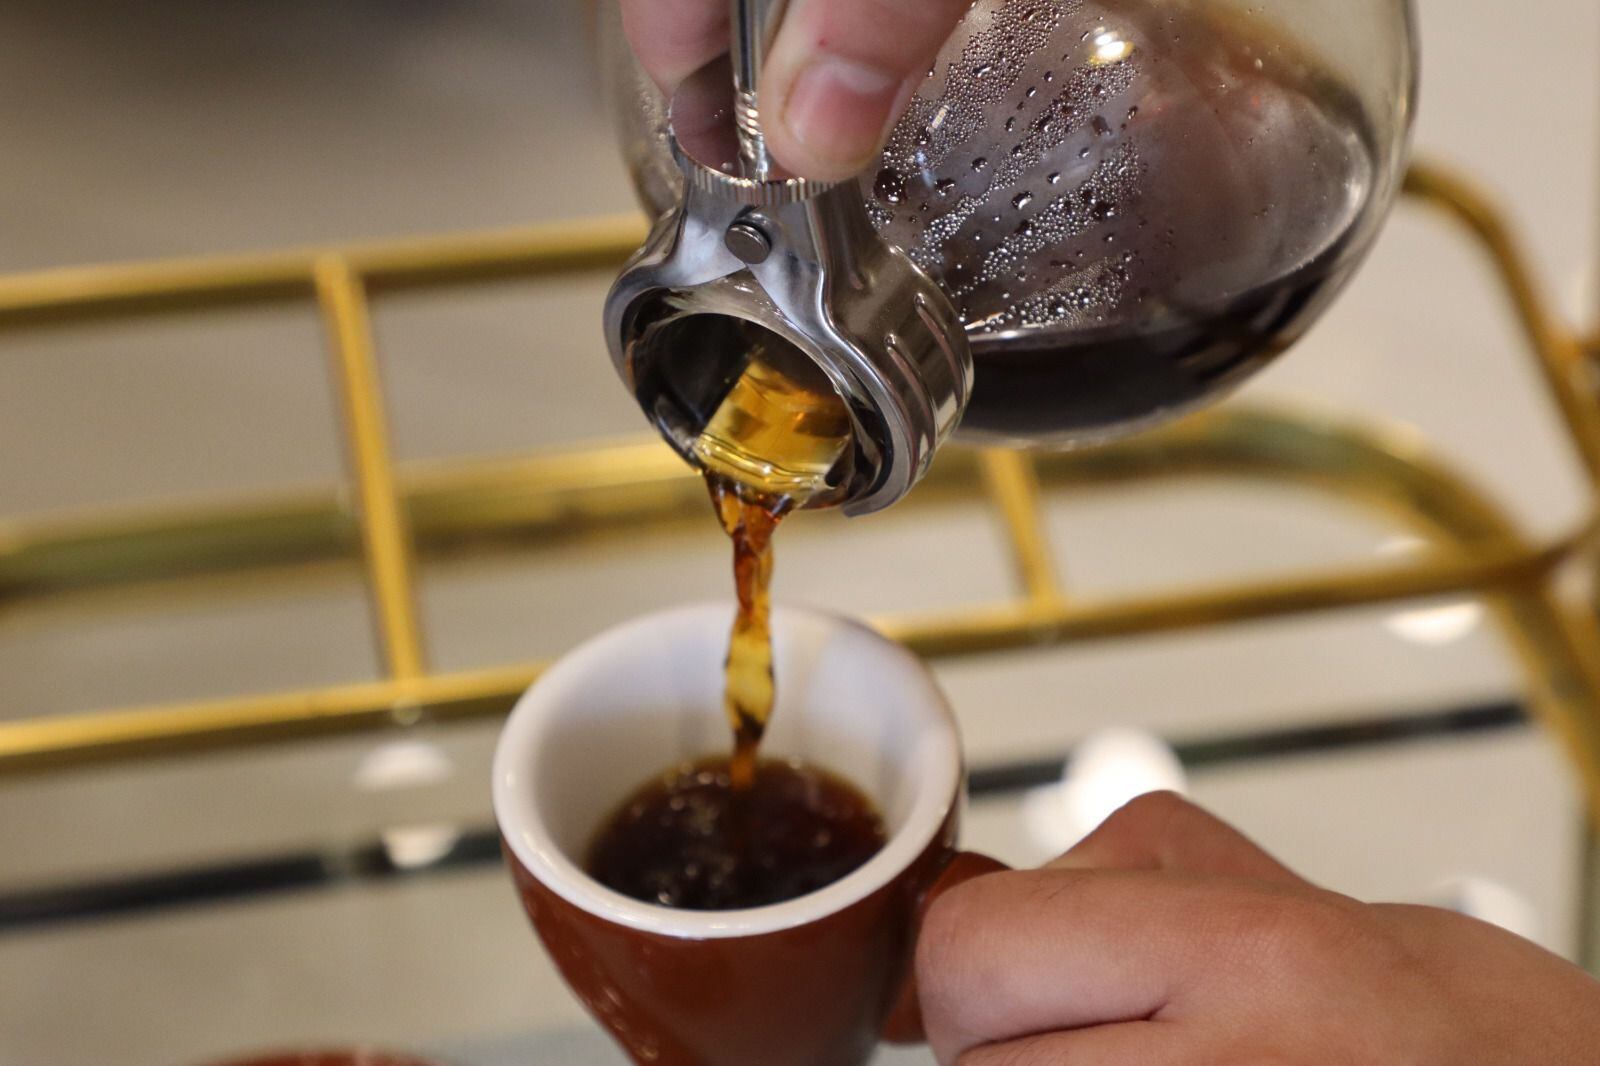 La cafeína, presente en nuestra taza diaria, puede tener efectos tanto positivos como negativos en nuestra salud, según la cantidad consumida
peruano en los mercados internacionales. Foto: Paula Elizalde / Infobae